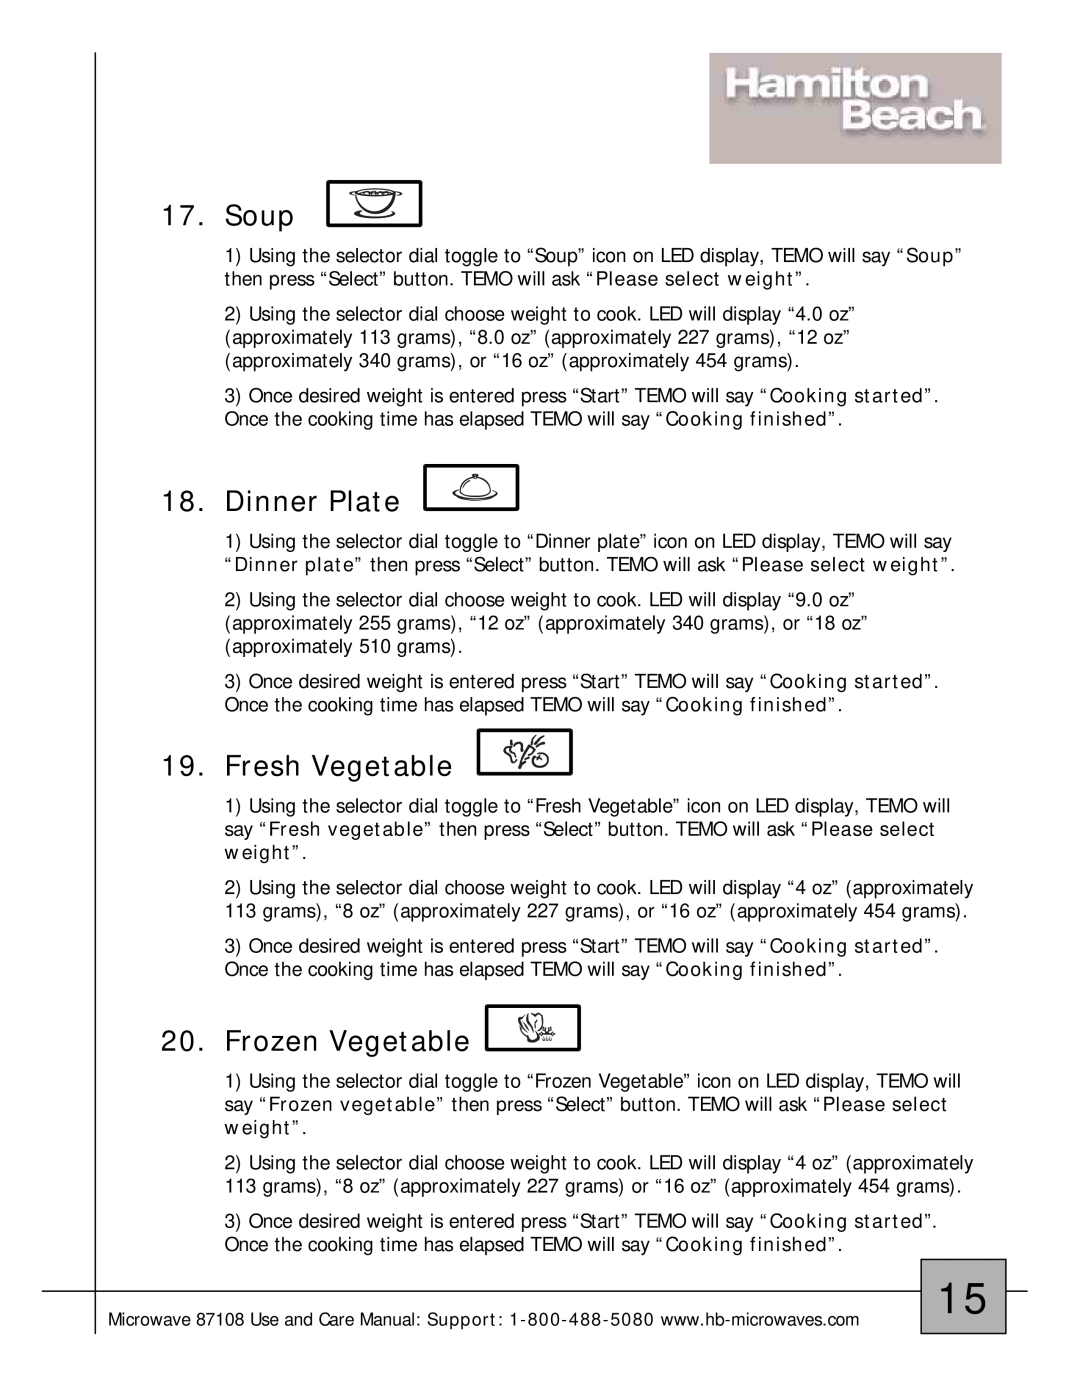 Hamilton Beach 87108 owner manual Soup, Dinner Plate, Fresh Vegetable, Frozen Vegetable 